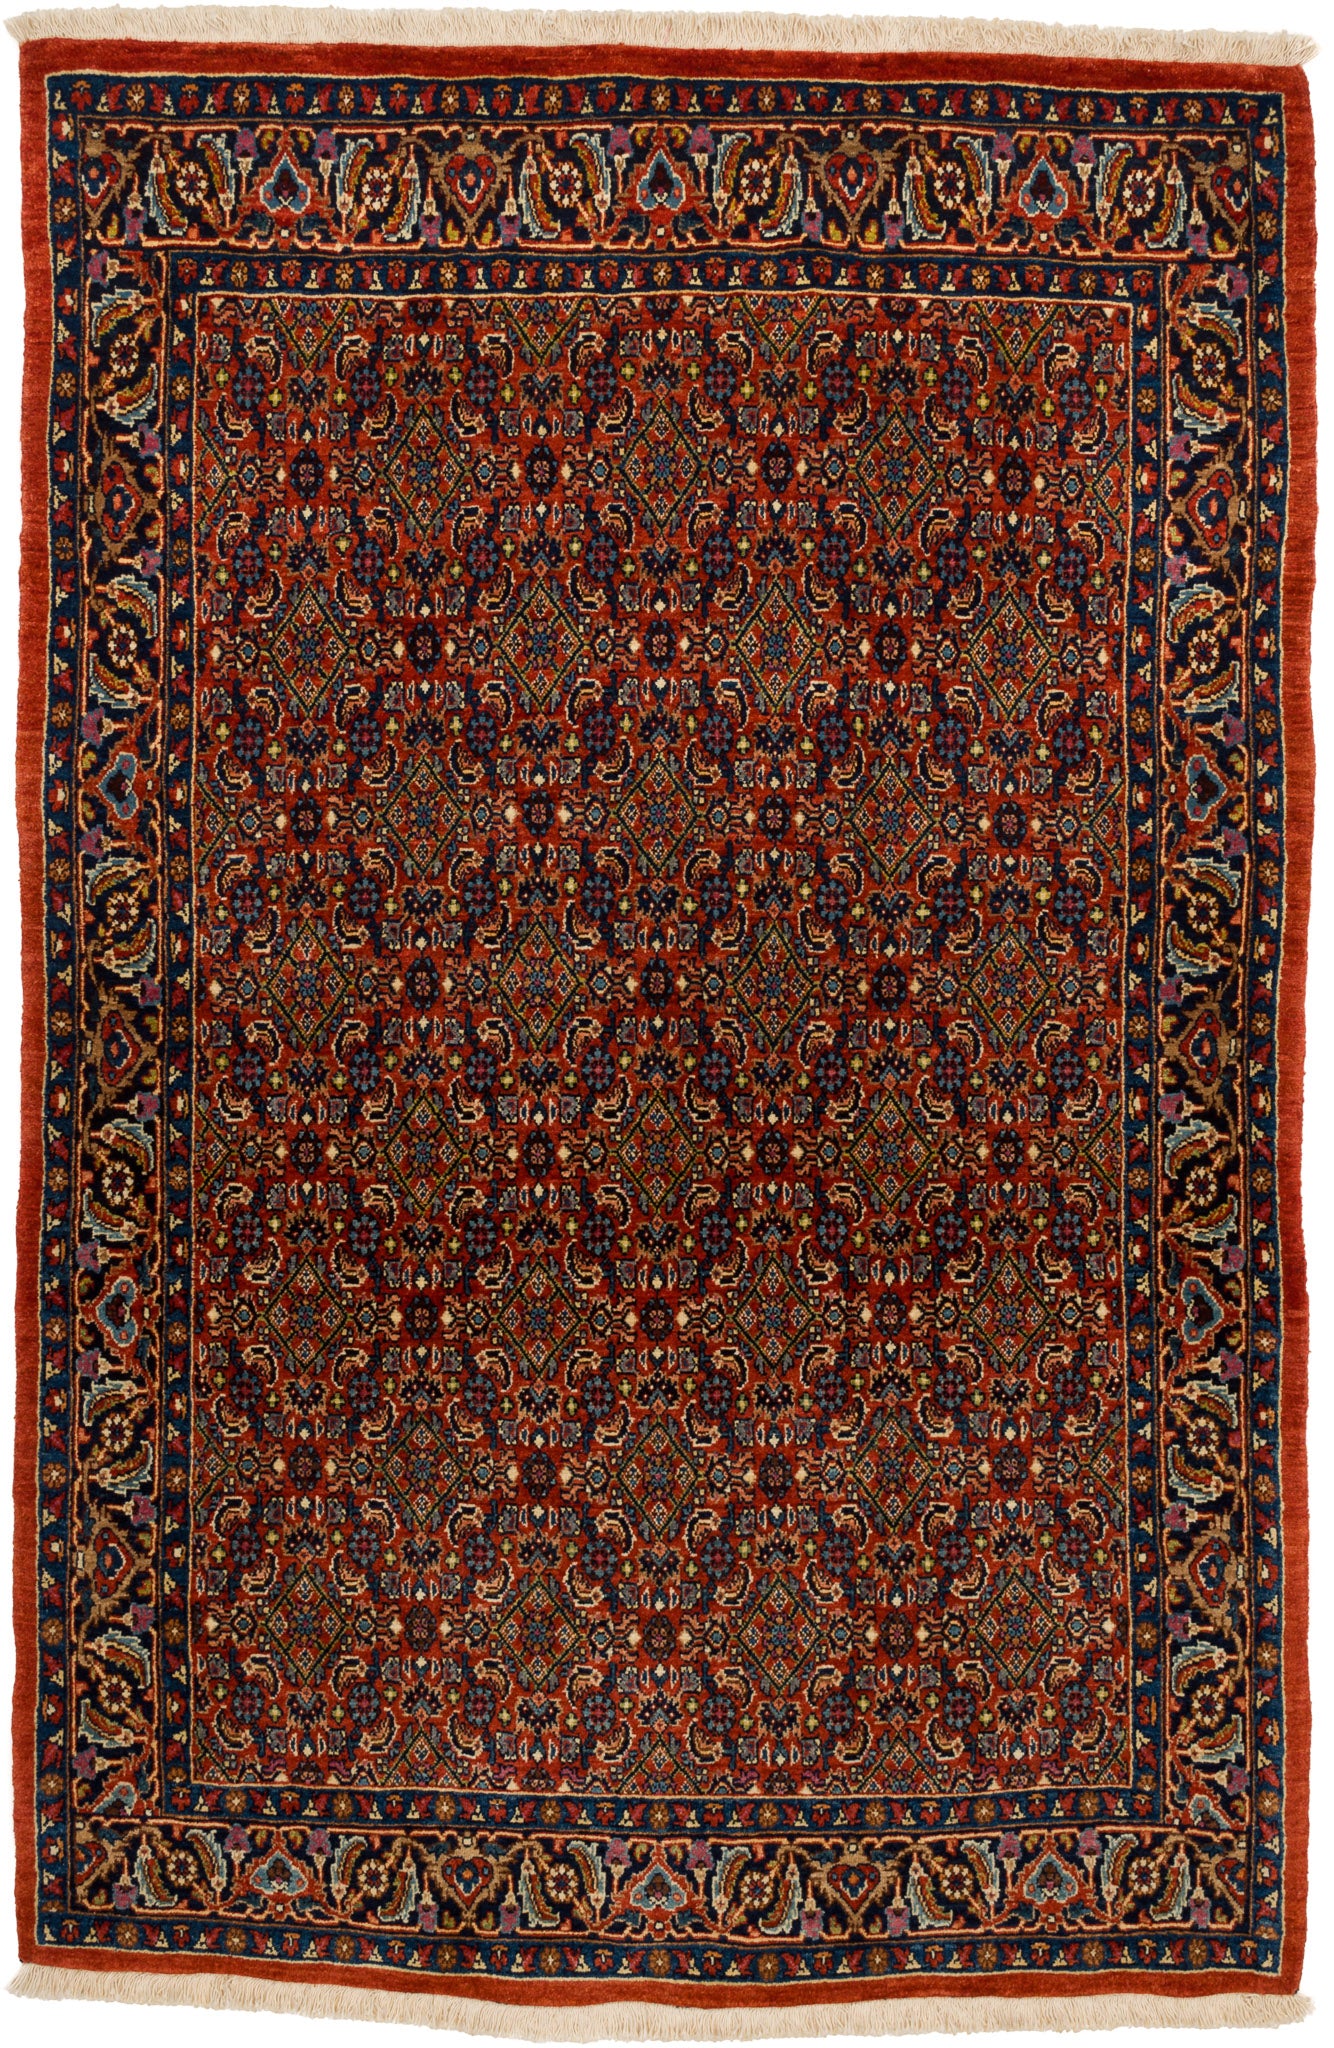 Bidjar Mirzai, 184 × 120 cm